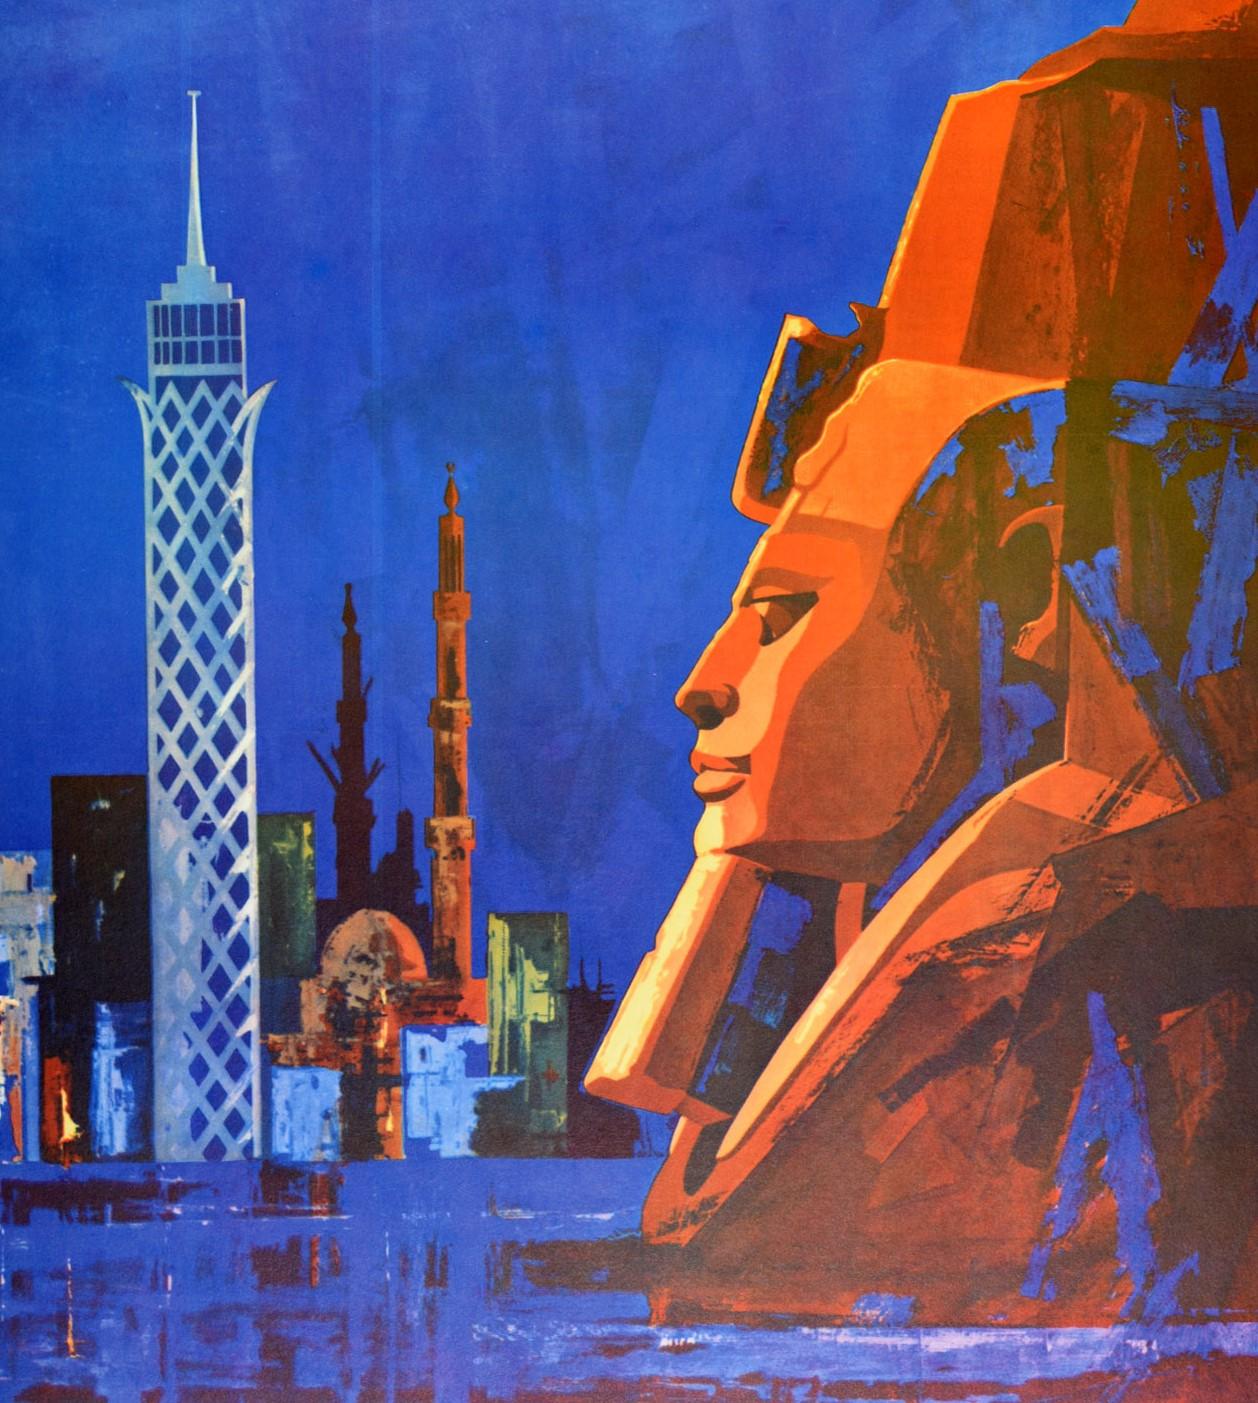 Original-Reiseplakat für Ägypten UAR (Vereinigte Arabische Republik; 1958-1971) mit traditionellen und modernen Stadtgebäuden vor dunkelblauem, schattiertem Hintergrund mit einem antiken Sphinx-Kopf im Vordergrund. Ausgezeichneter Zustand.